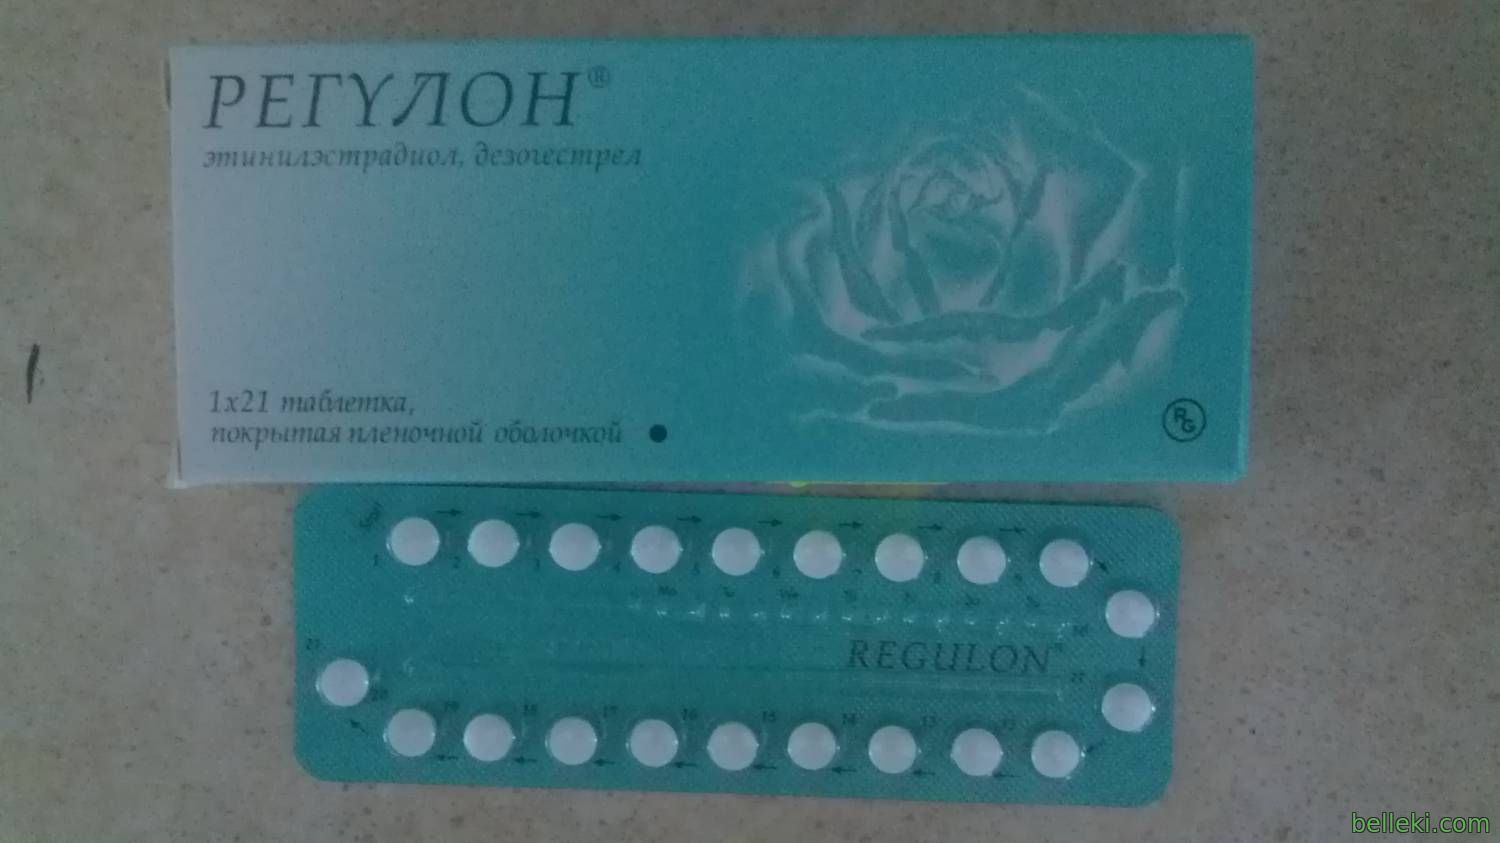 Противозачаточные таблетки для мужчин название. Оральный контрацептив регулон. Таблетки от беременности регулон. Противозачаточные таблетки регулон. Противозачаточные таблетки regulon.